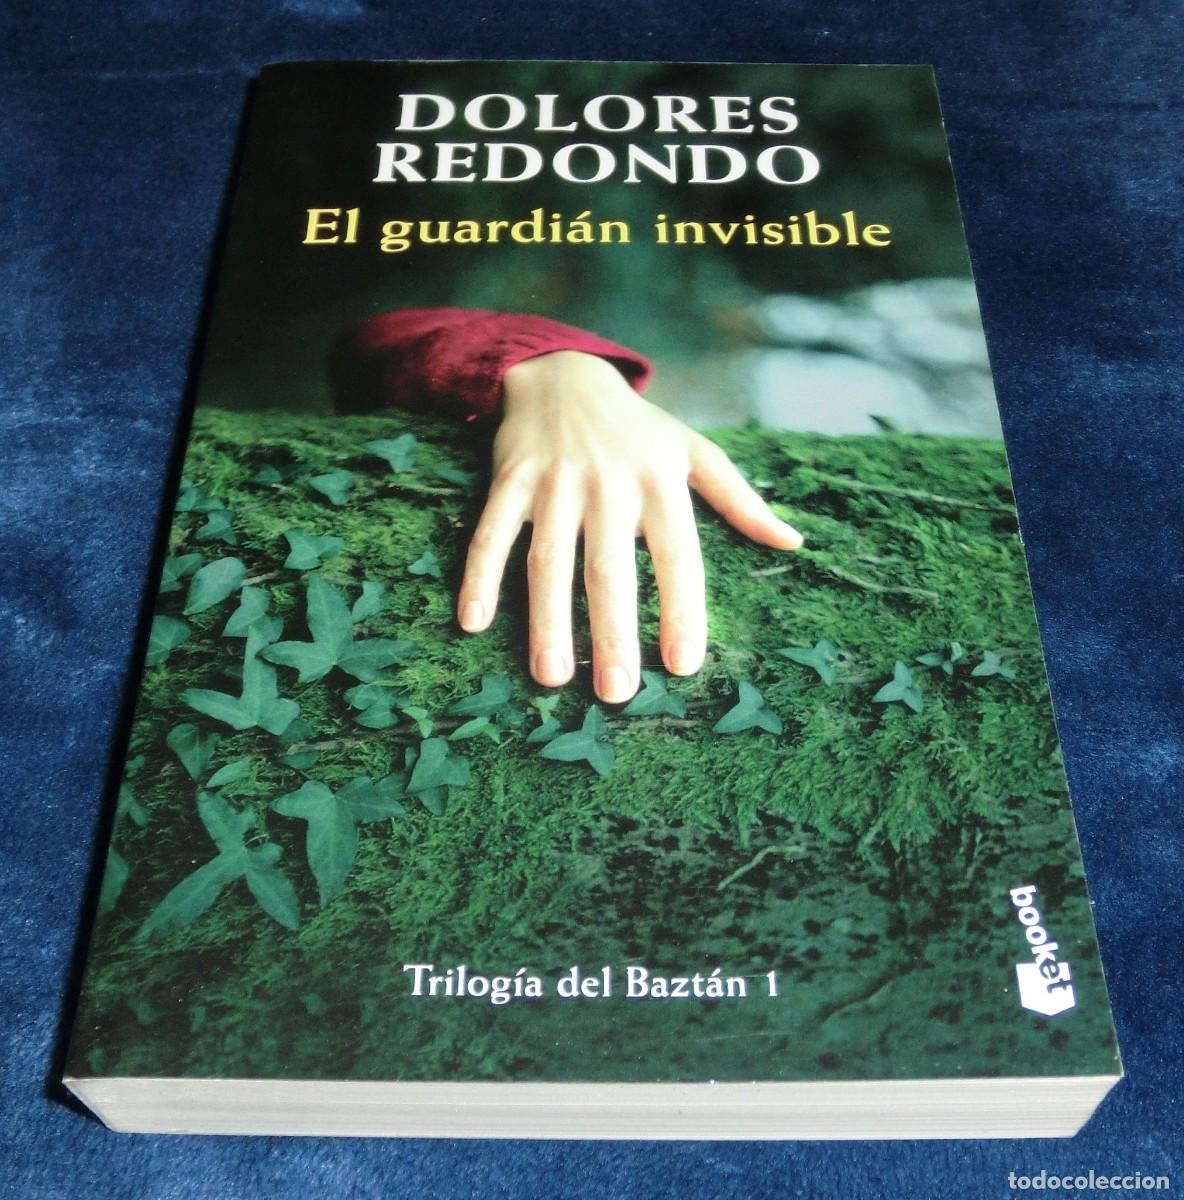 el guardián invisible - dolores redondo (trilog - Acquista Libri usati di  horror, mistero e gialli su todocoleccion